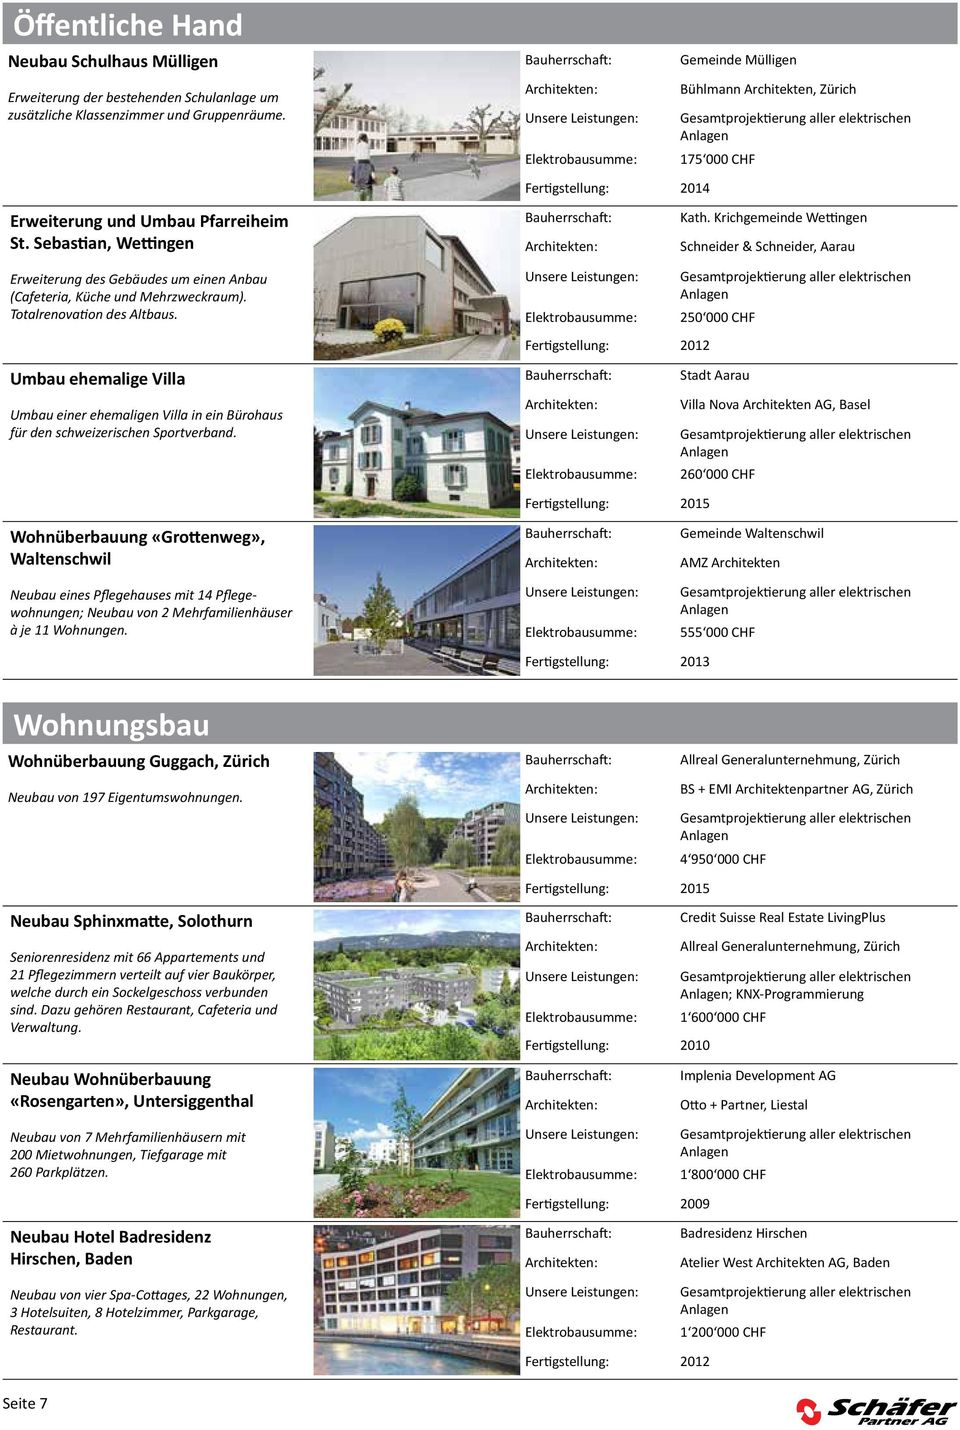 Krichgemeinde Wettingen Schneider & Schneider, Aarau Erweiterung des Gebäudes um einen Anbau (Cafeteria, Küche und Mehrzweckraum). Totalrenovation des Altbaus.